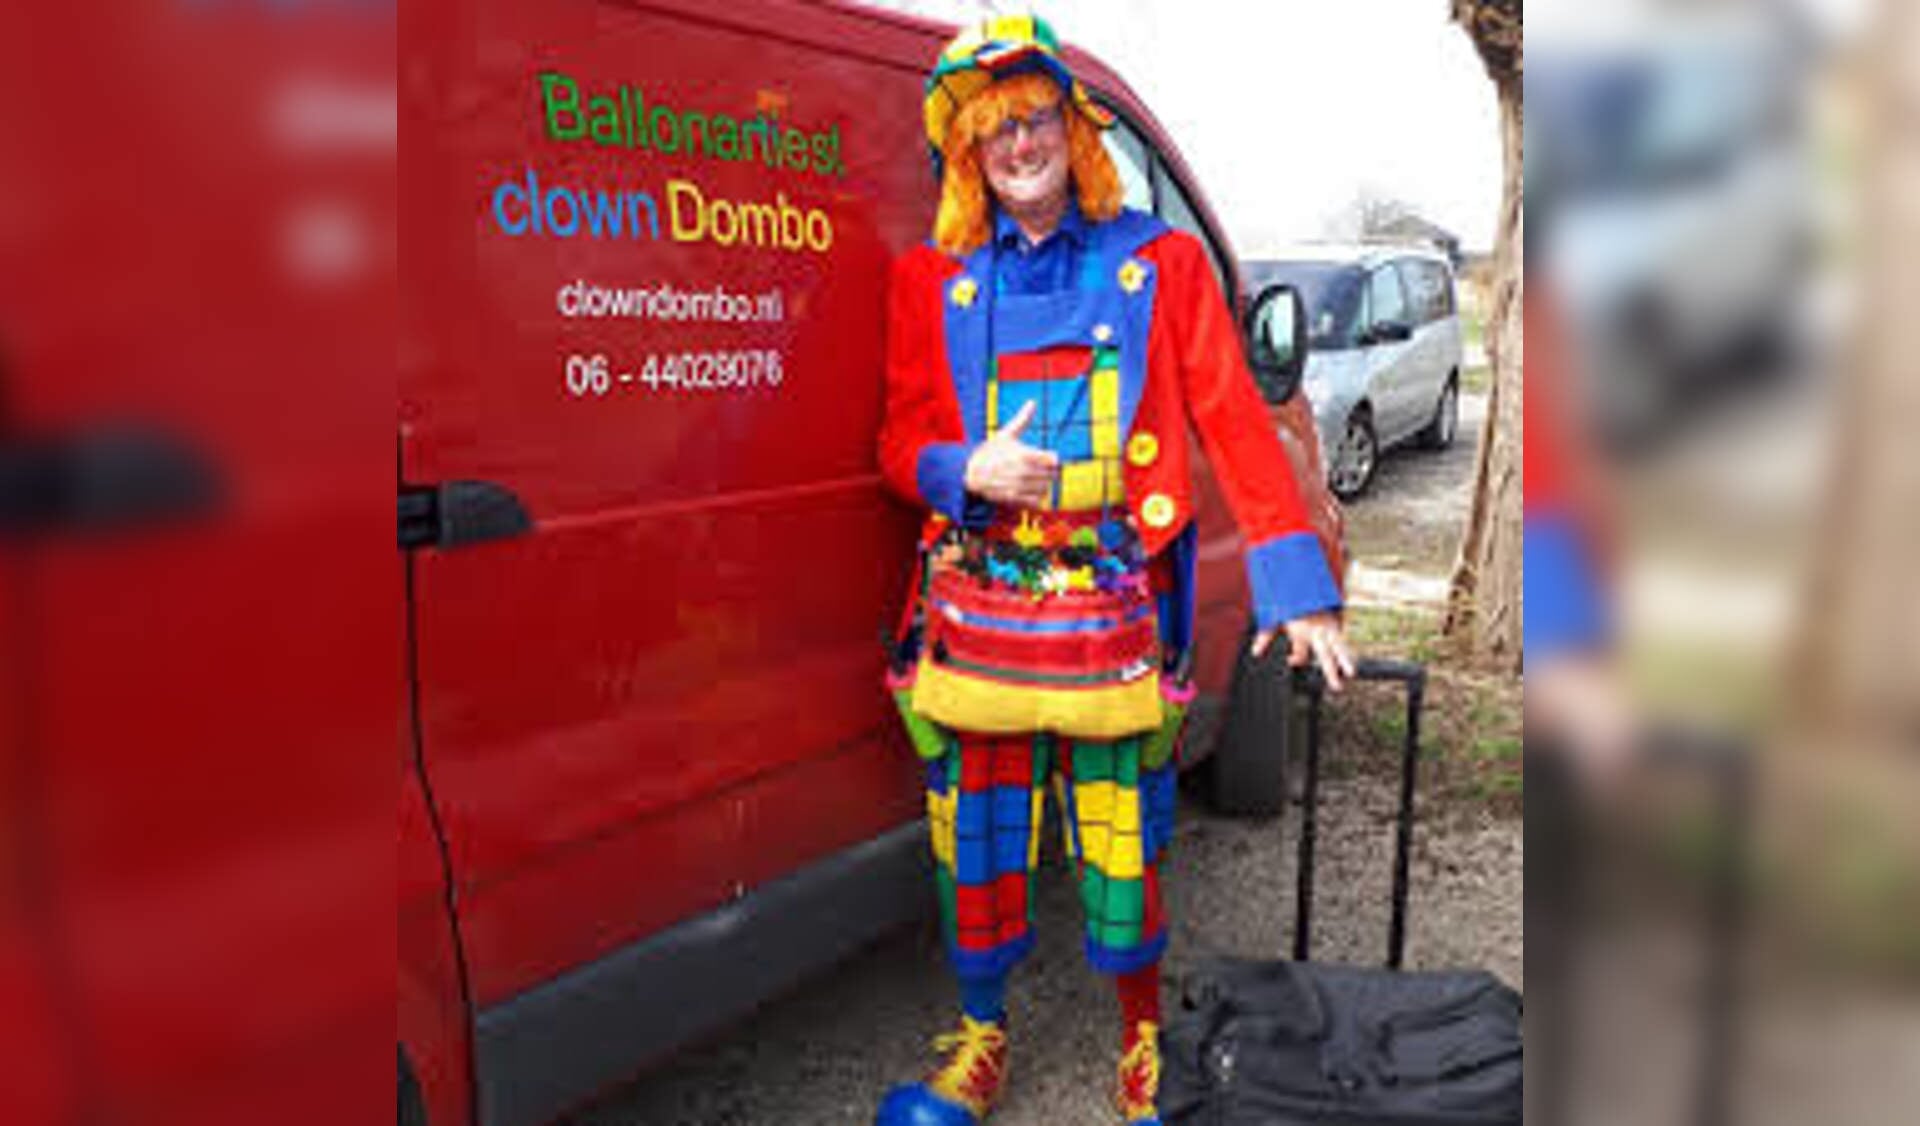 Clown Dombo is present op de Huppeltjesmarkt.